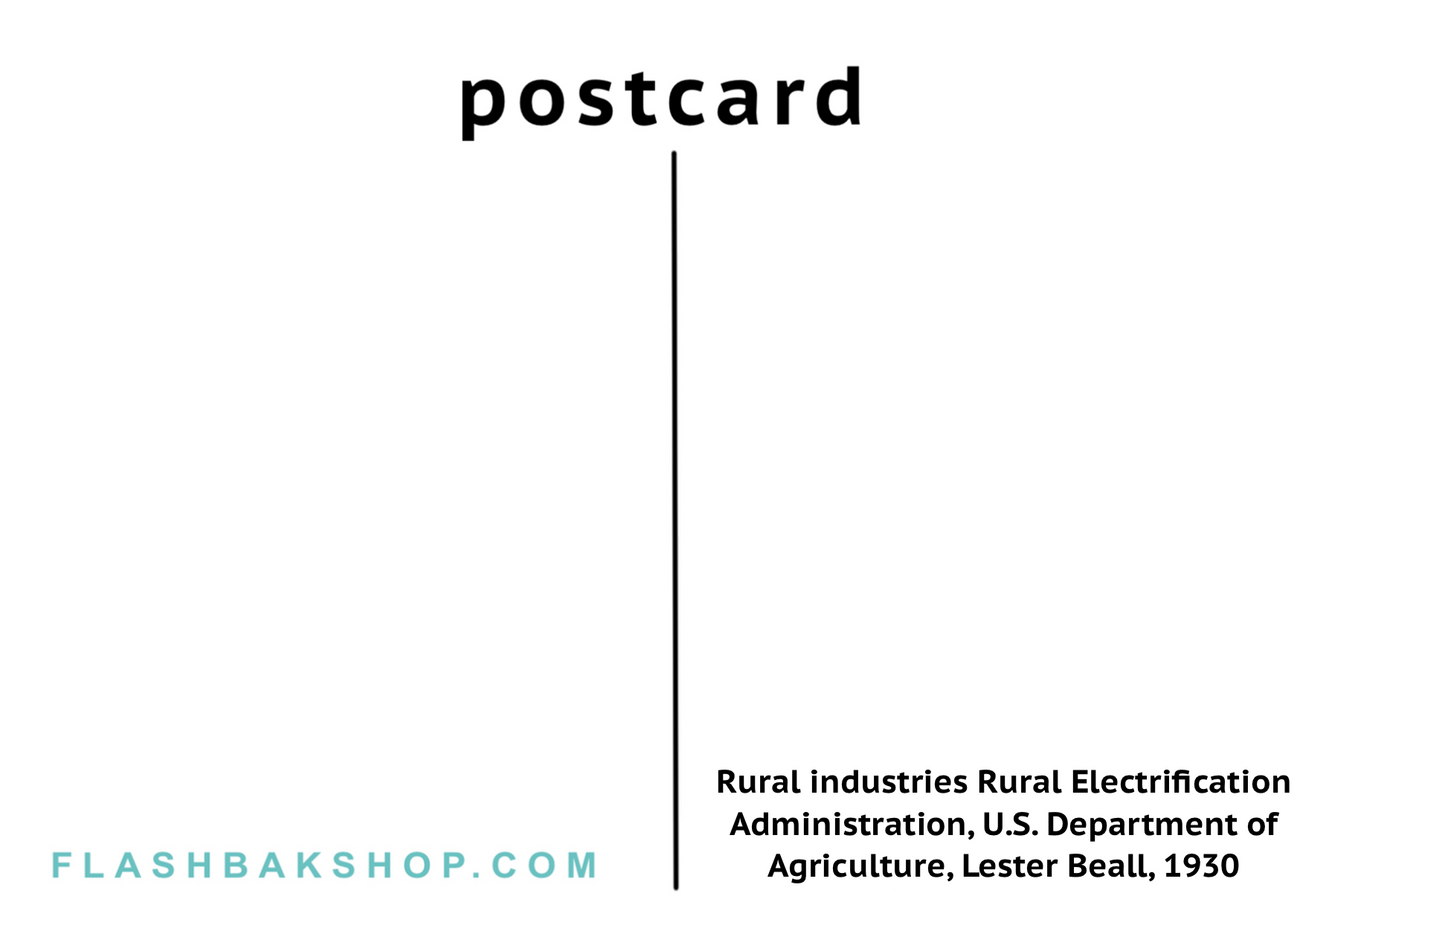 Industrias rurales, Administración de electrificación rural, Departamento de agricultura de EE. UU. por Lester Beall, 1930 - Postal